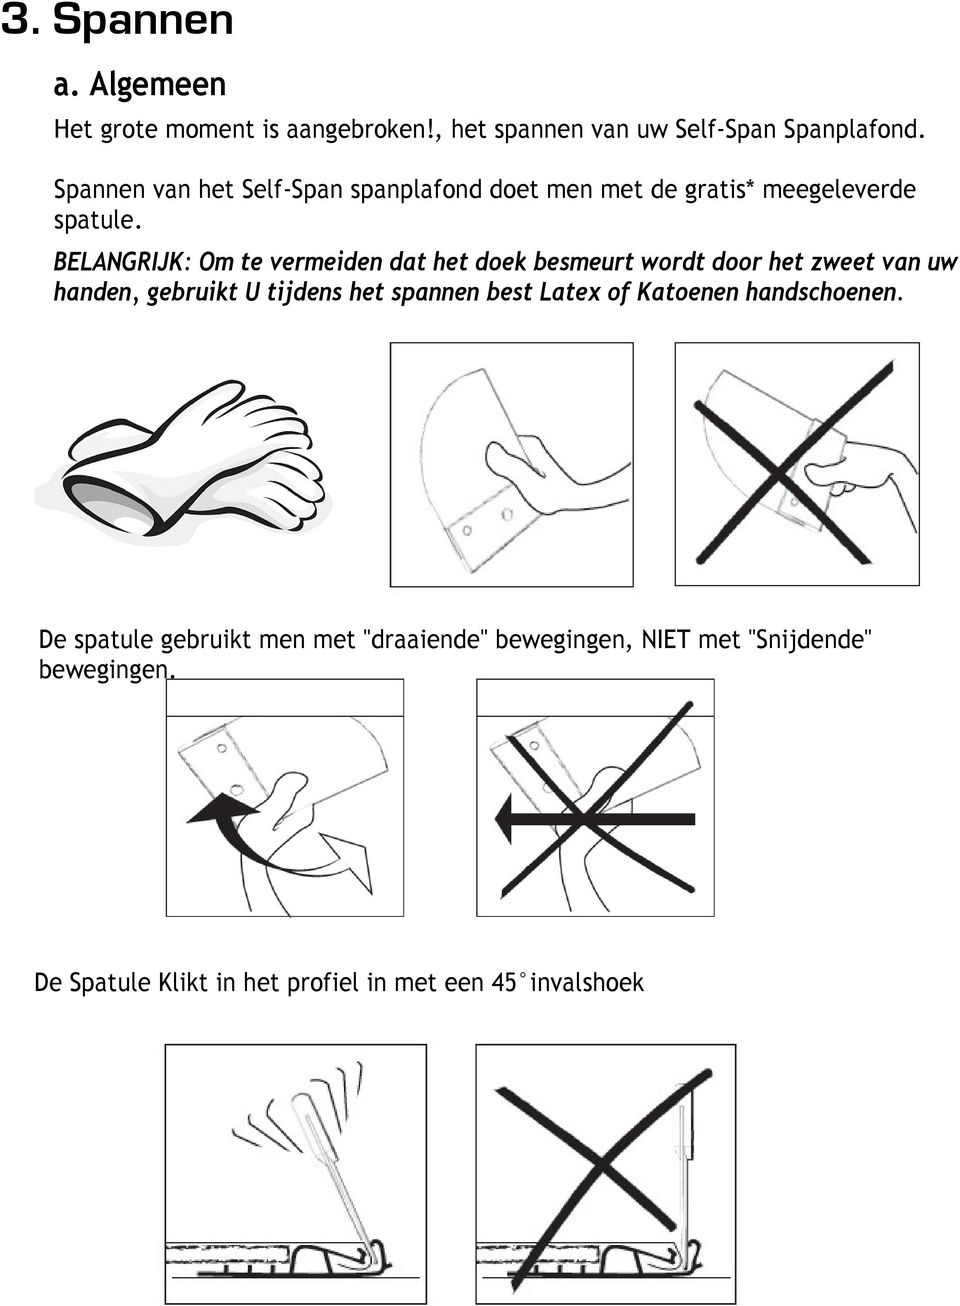 BELANGRIJK: Om te vermeiden dat het doek besmeurt wordt door het zweet van uw handen, gebruikt U tijdens het spannen